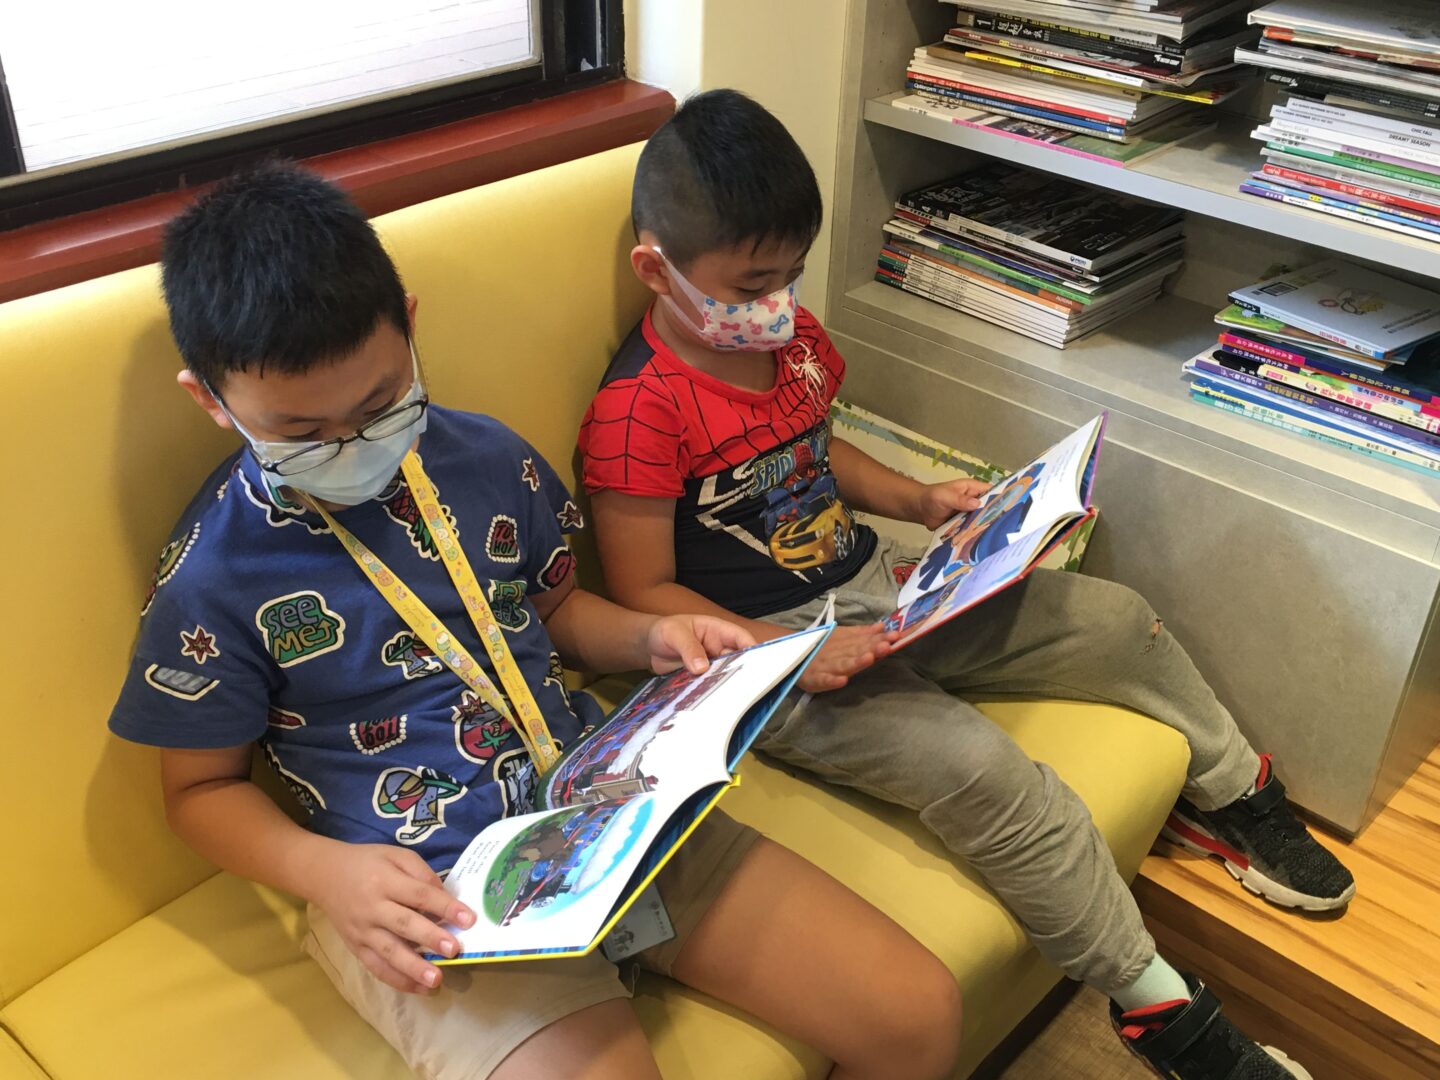 診所的圖書角落有不少繪本，孩子們靜靜閱讀